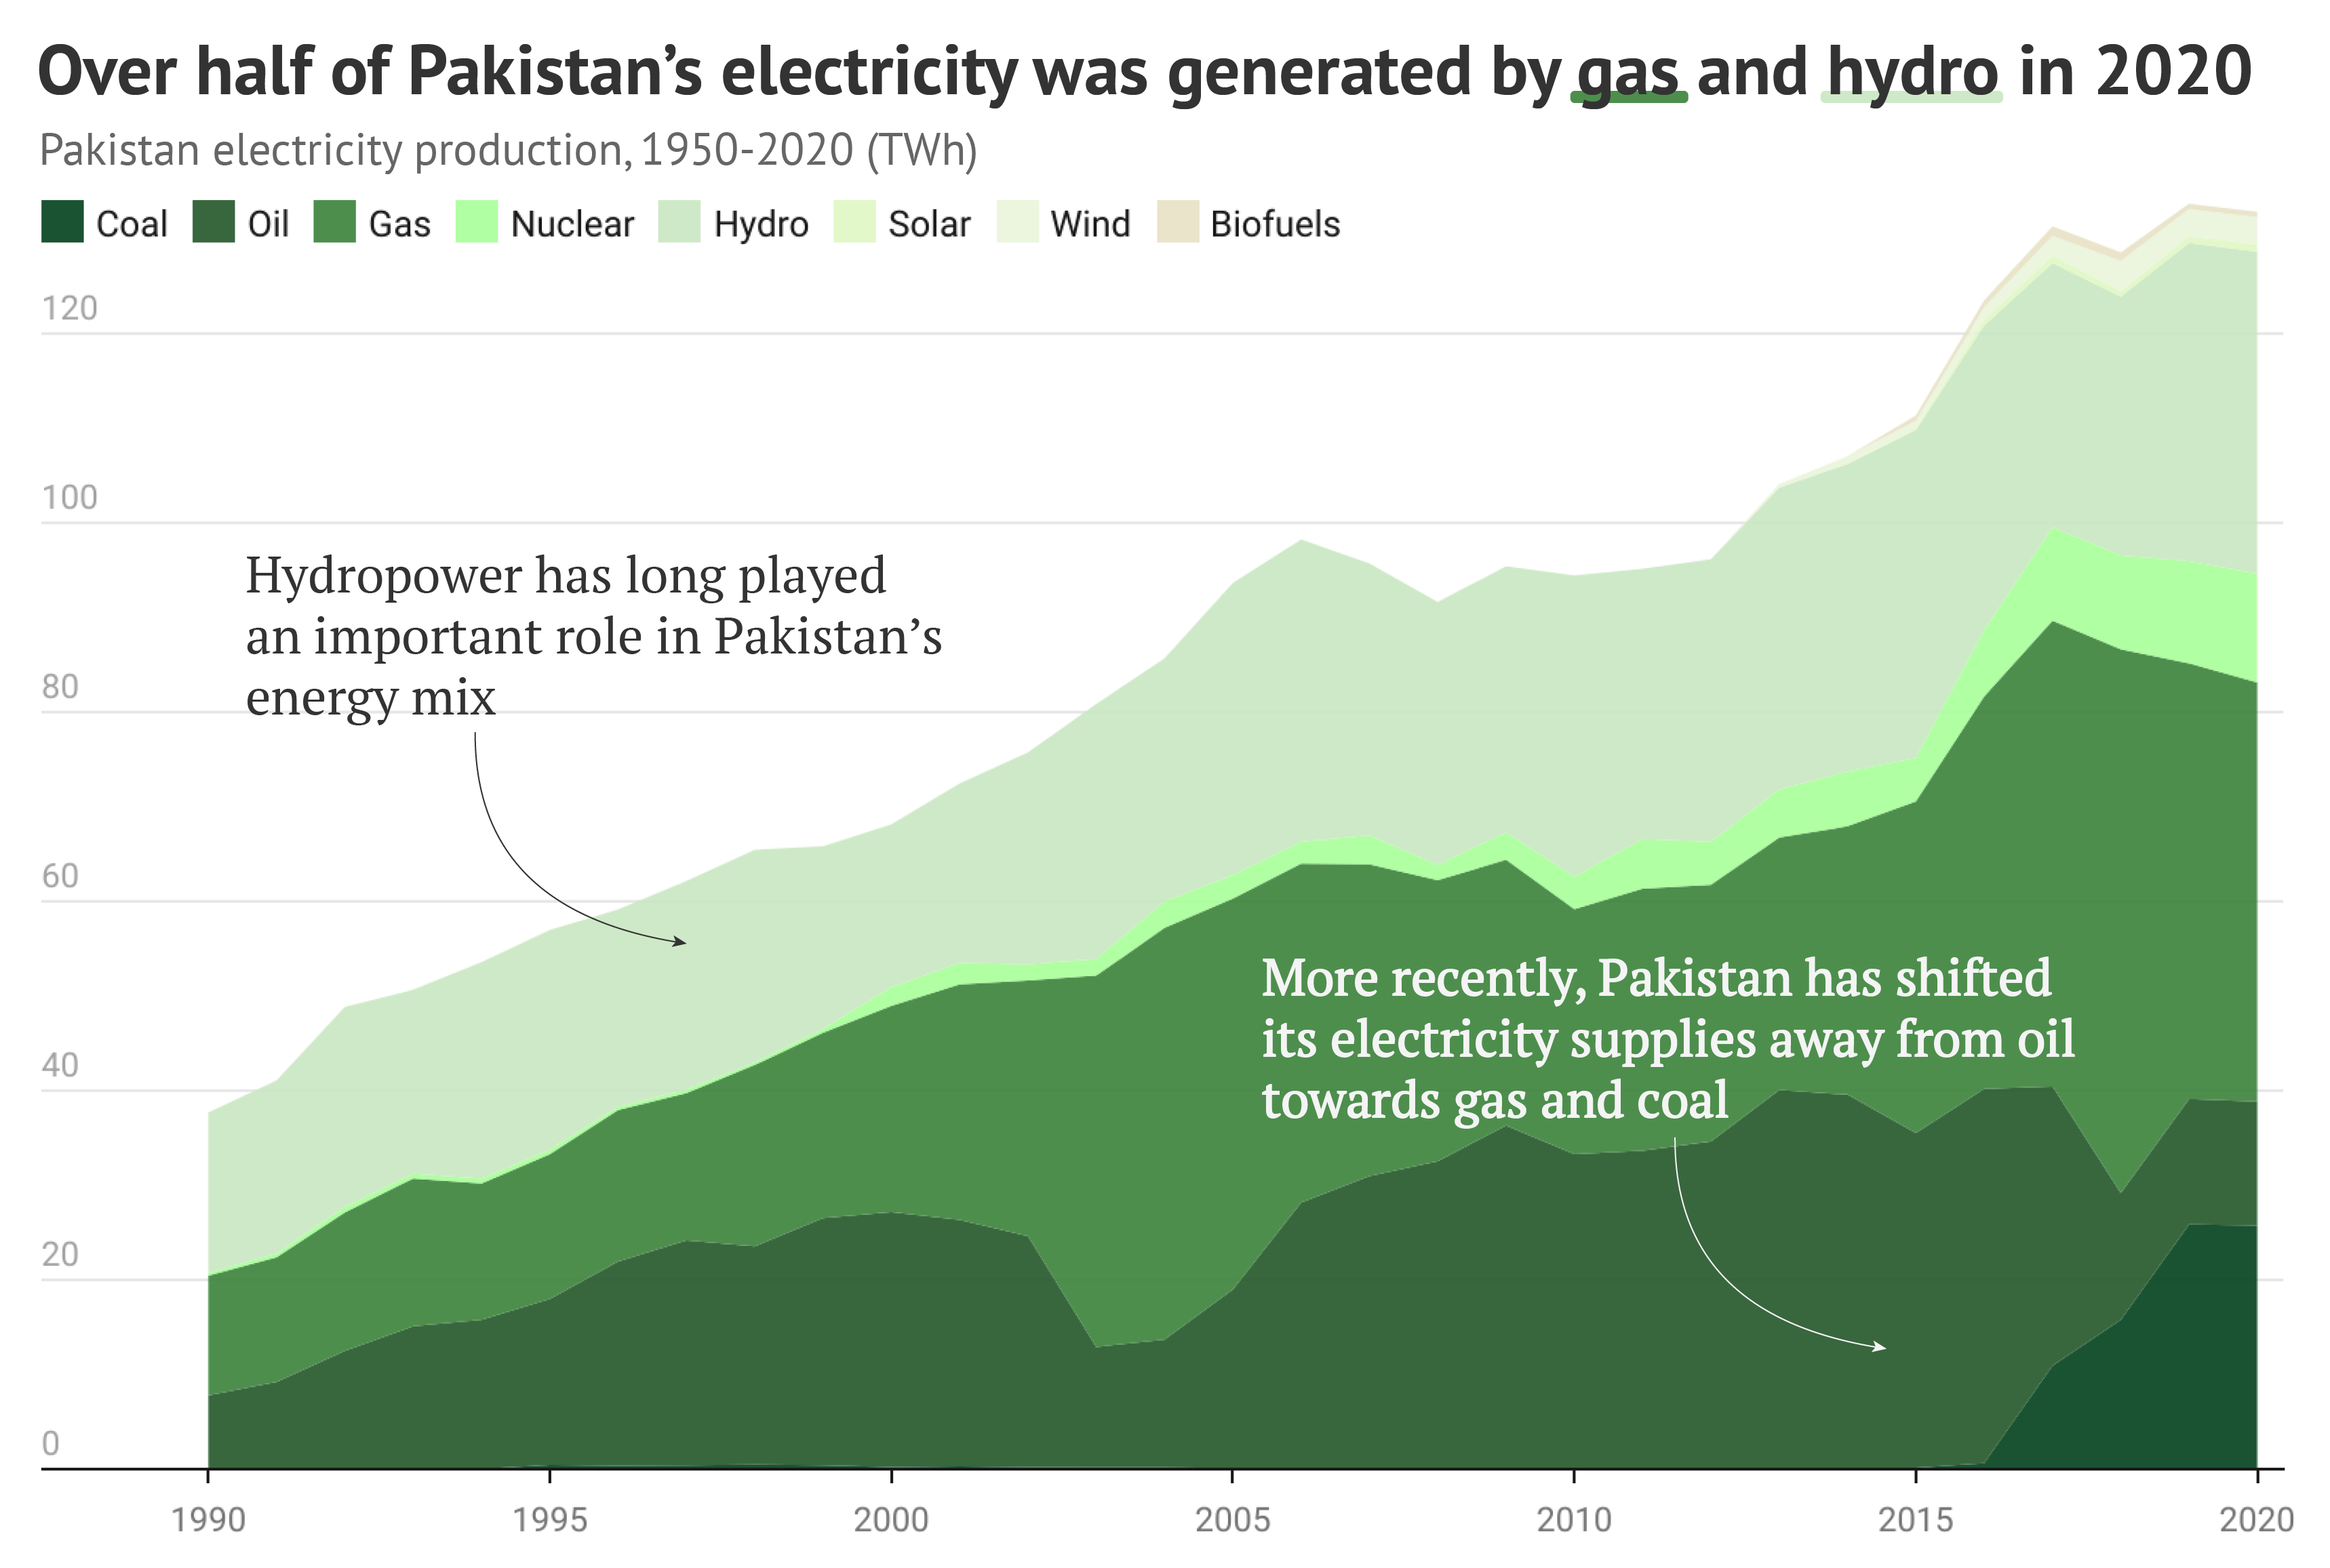 Grafic care arată că peste jumătate din energia electrică a Pakistanului a fost generată de gaze și hidrocarburi în 2020.